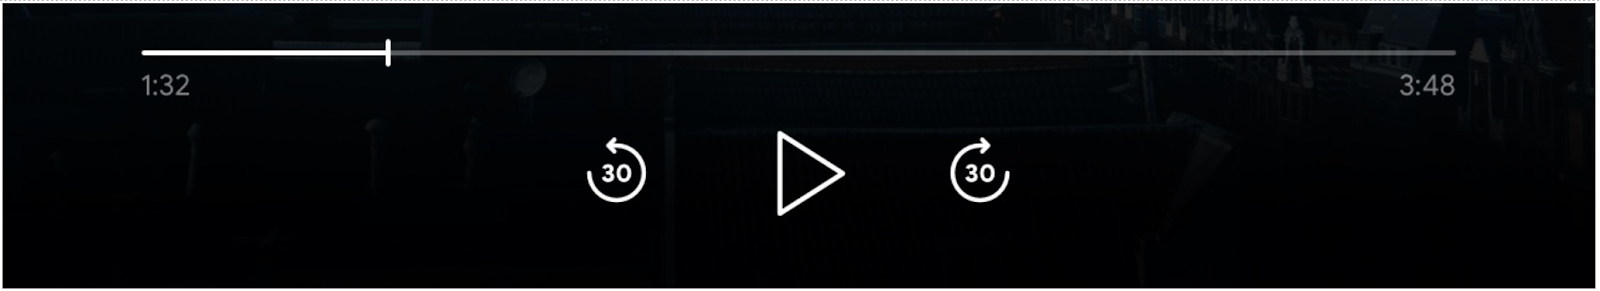 メディア プレーヤー コントロールの画像: 進行状況バー、再生ボタン、前方にスキップ、後方にスキップ、ボタンが有効